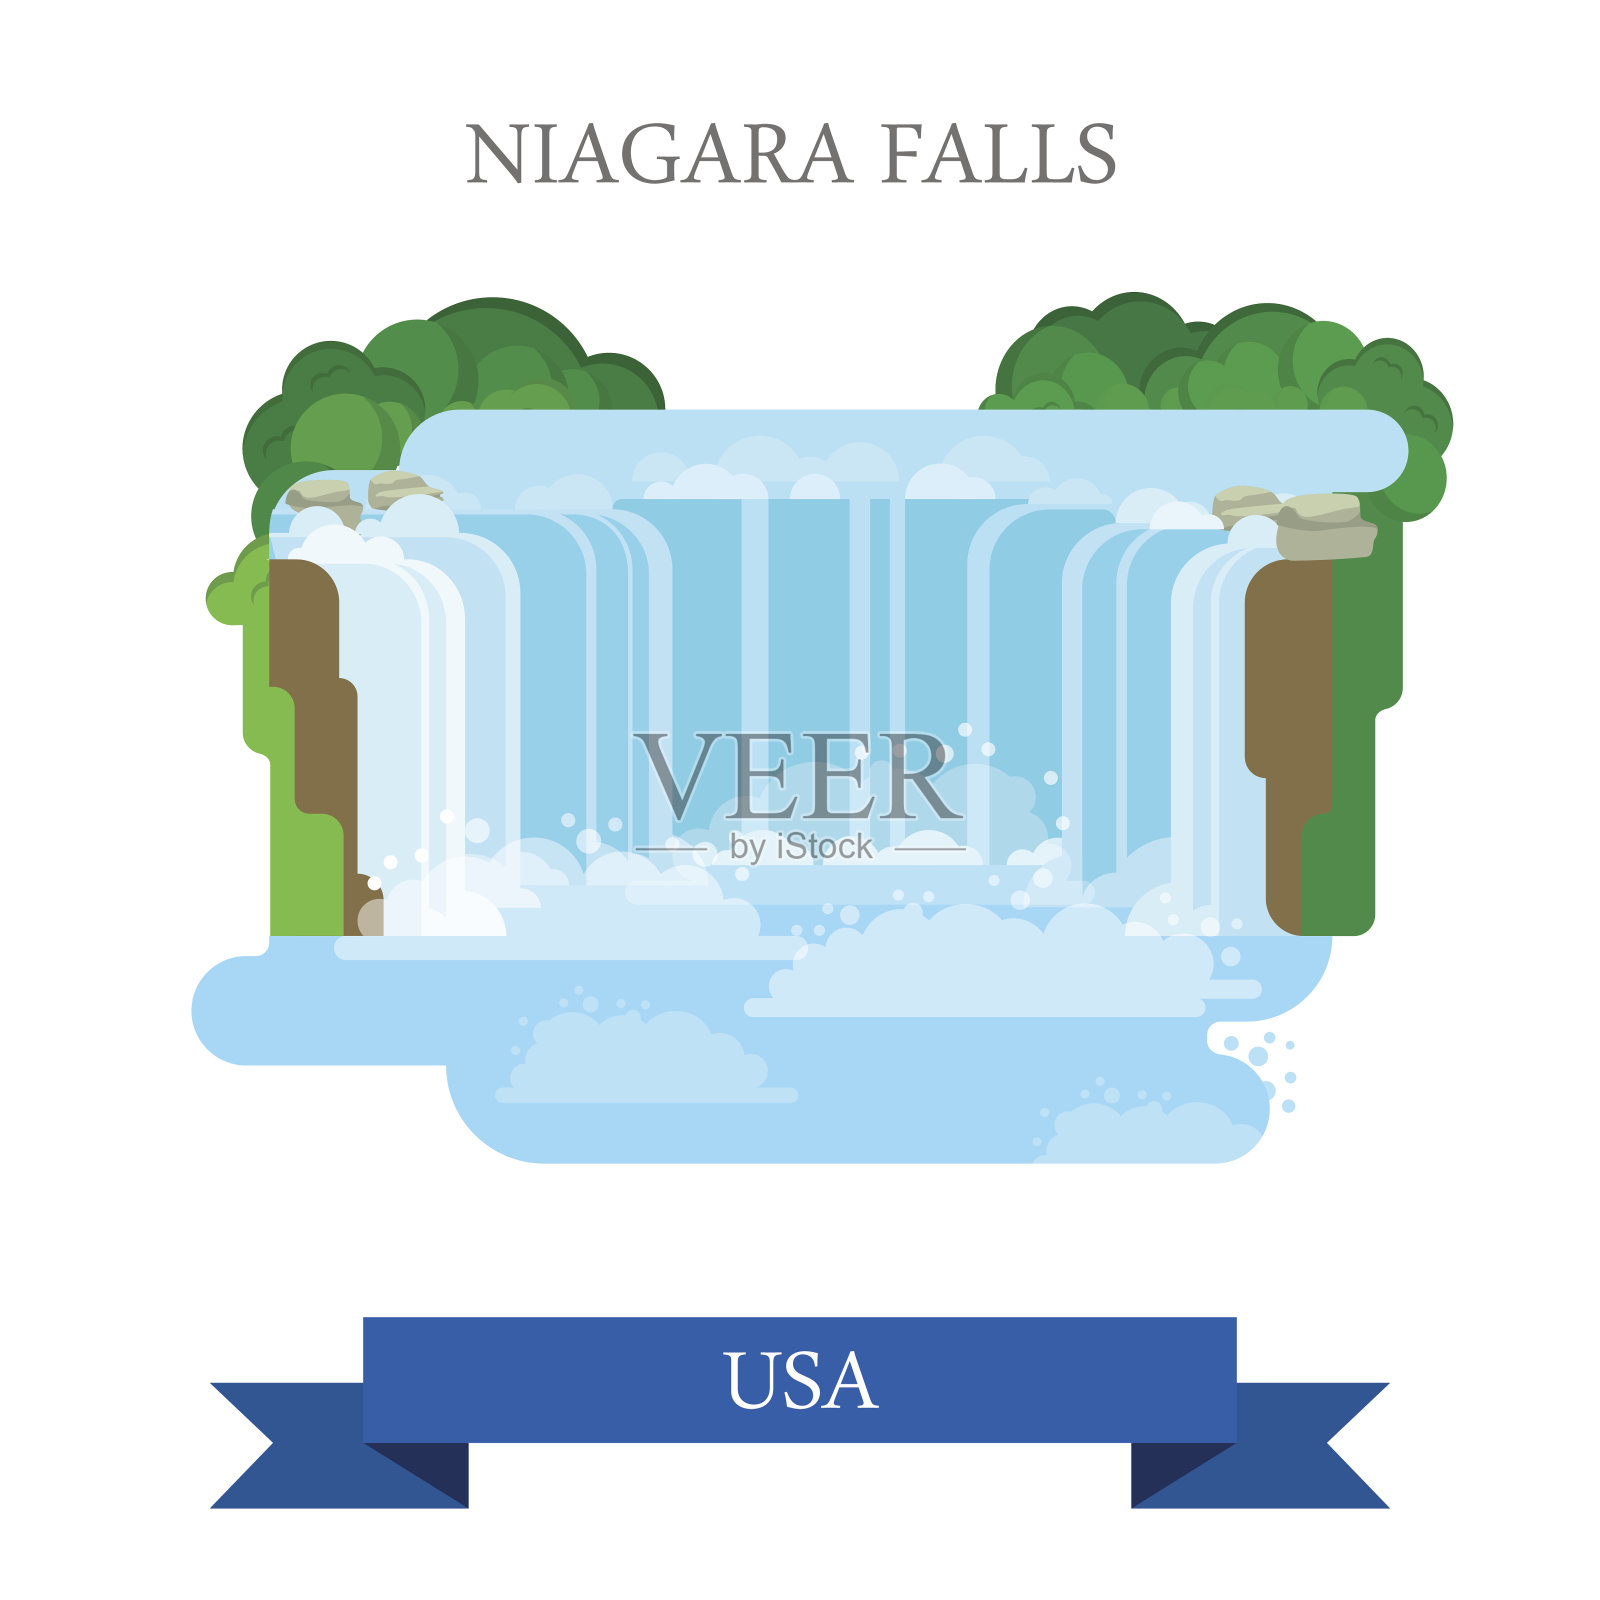 美国/加拿大的尼亚加拉大瀑布。平面卡通风格的历史景点展示景点网站矢量插图。世界各国度假旅游观光北美美国收藏。插画图片素材